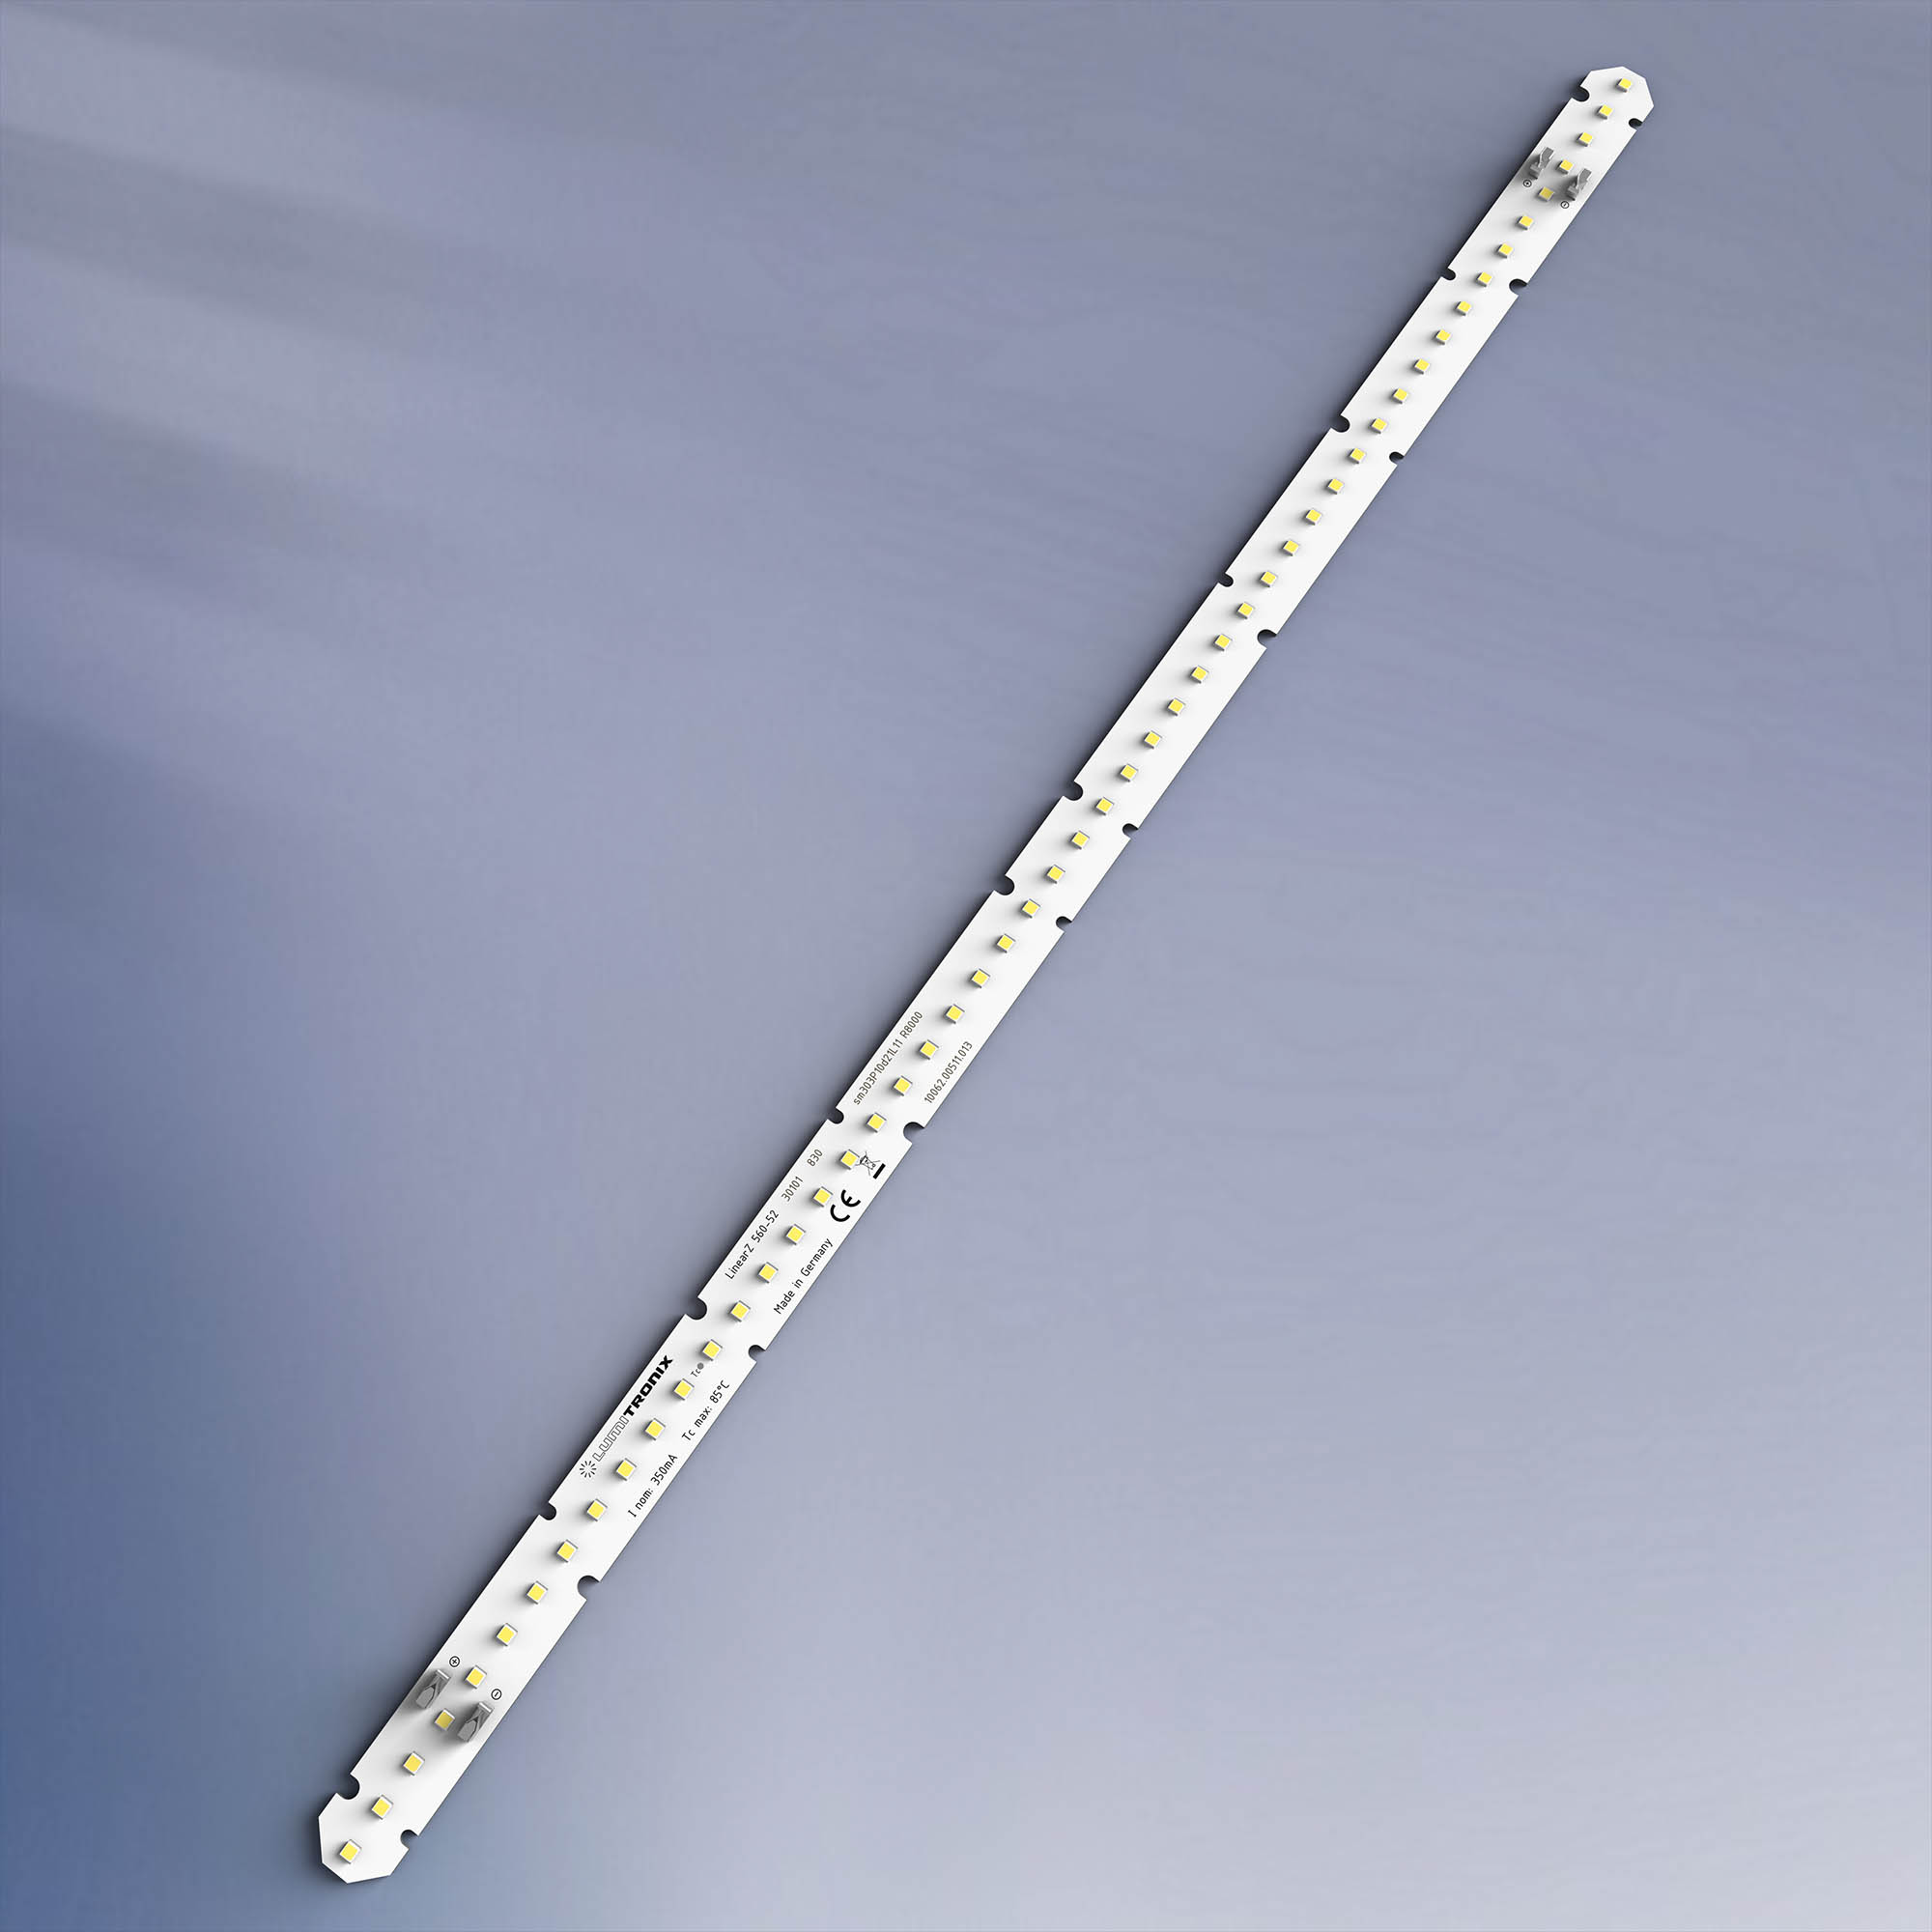 LinearZ 52 Nichia Fita LED Zhaga Optisolis CRI98+ branco frio 6500K 1480lm 350mA 37.5V 52 LED módulo 56cm (2643lm/m 24W/m)